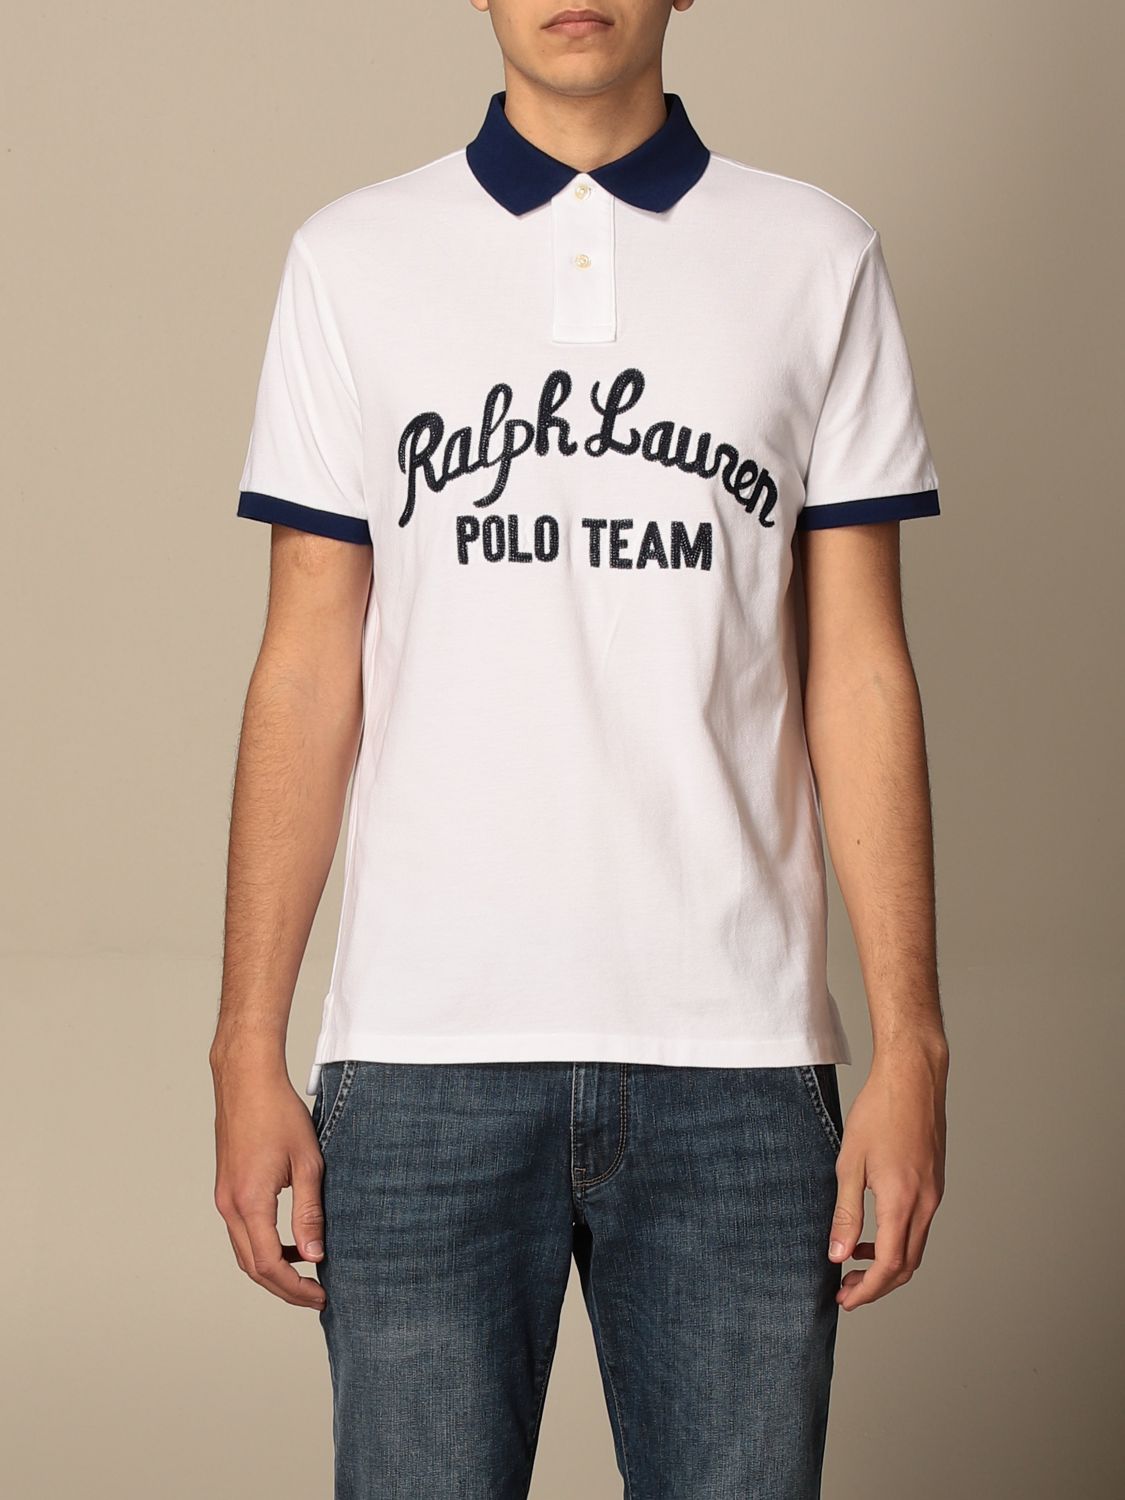 Venta > camisetas hombre polo ralph lauren > en stock